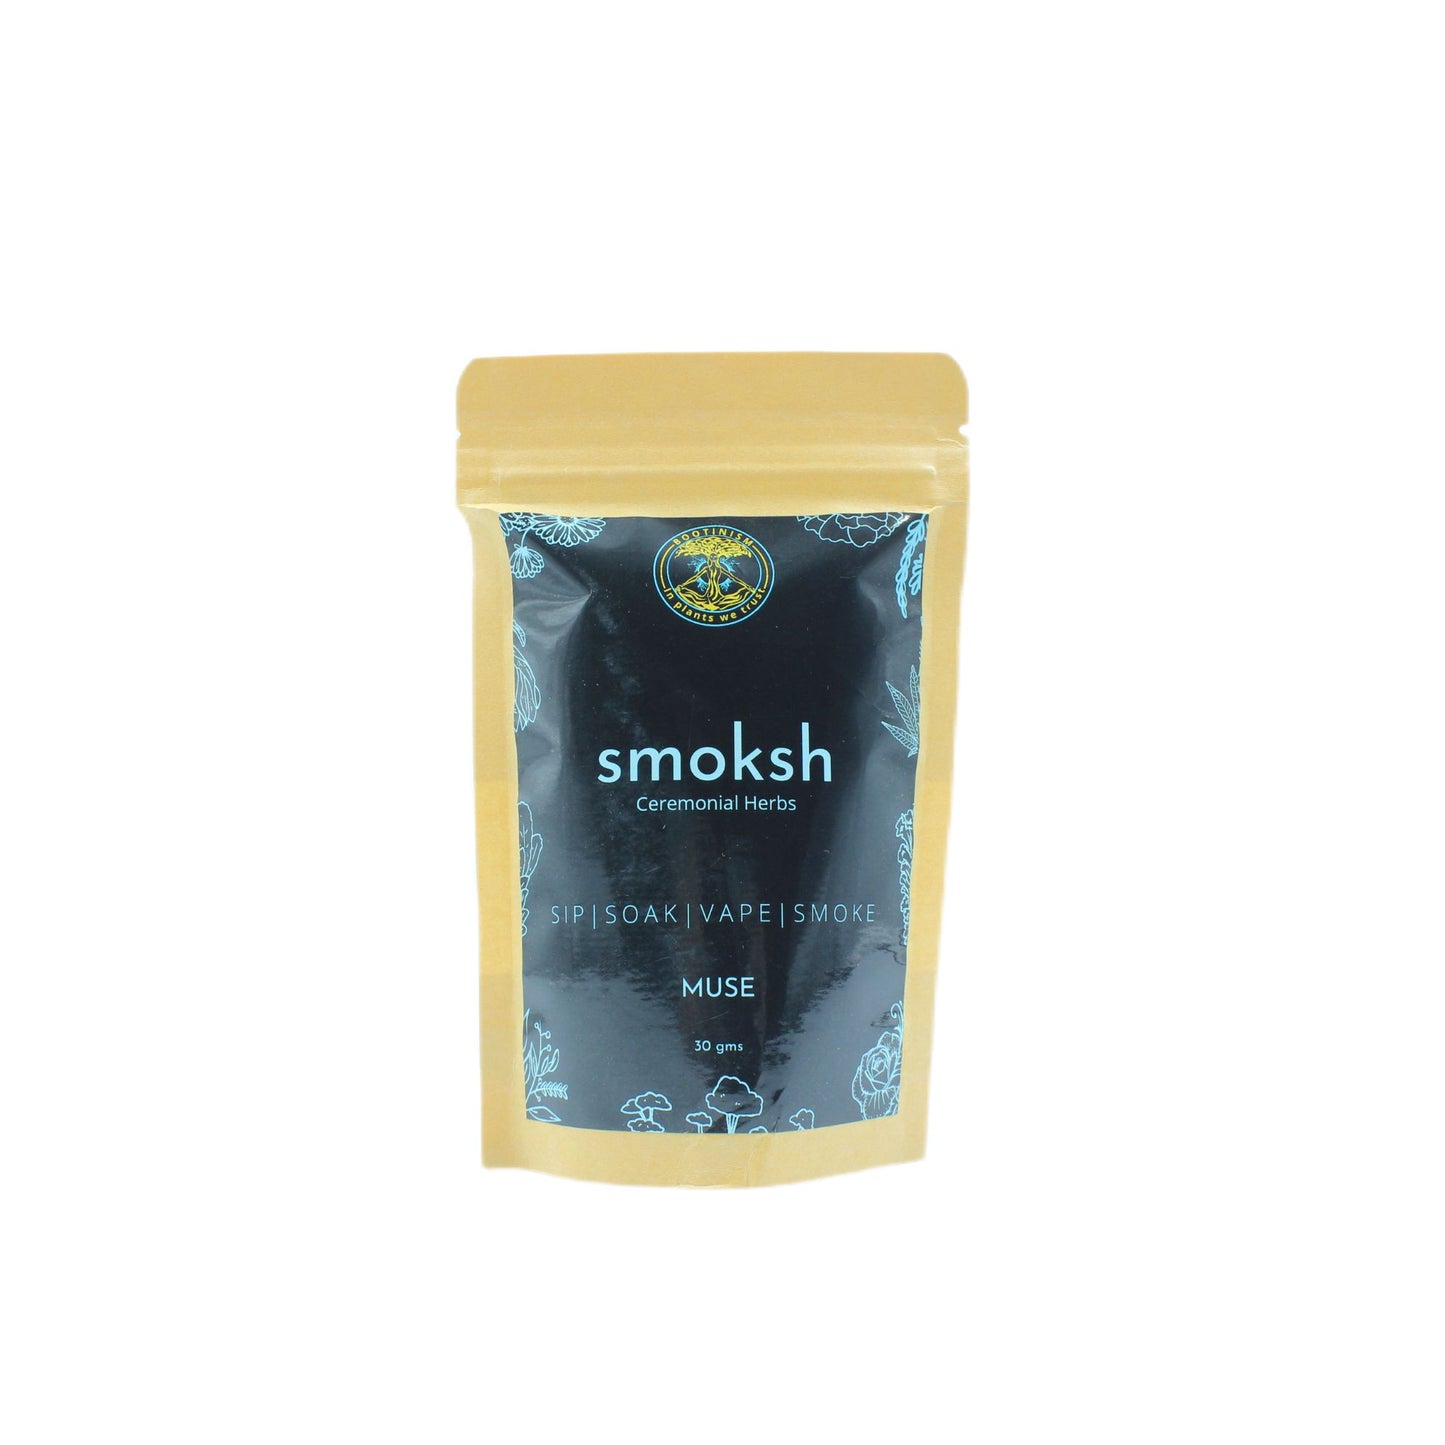 SMOKSH MUSE Herbal Smoking Blend 30g  HighJack India